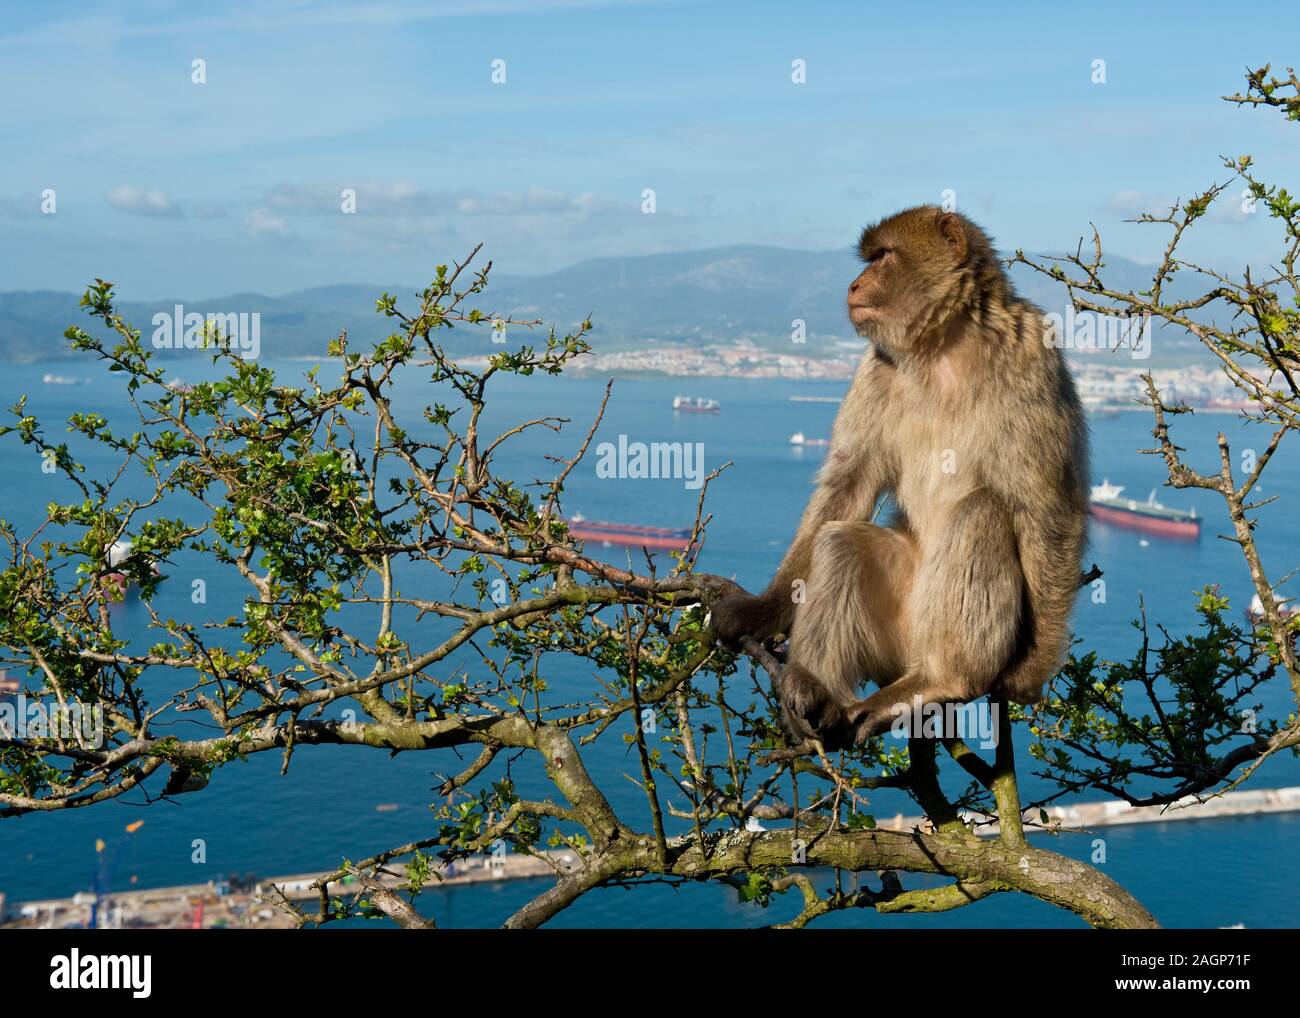 Macaco de Berbería (Macaca sylvanus) mono sobre el Peñón de Gibraltar. Bahía de Gibraltar en el fondo. Reino Unido Foto de stock